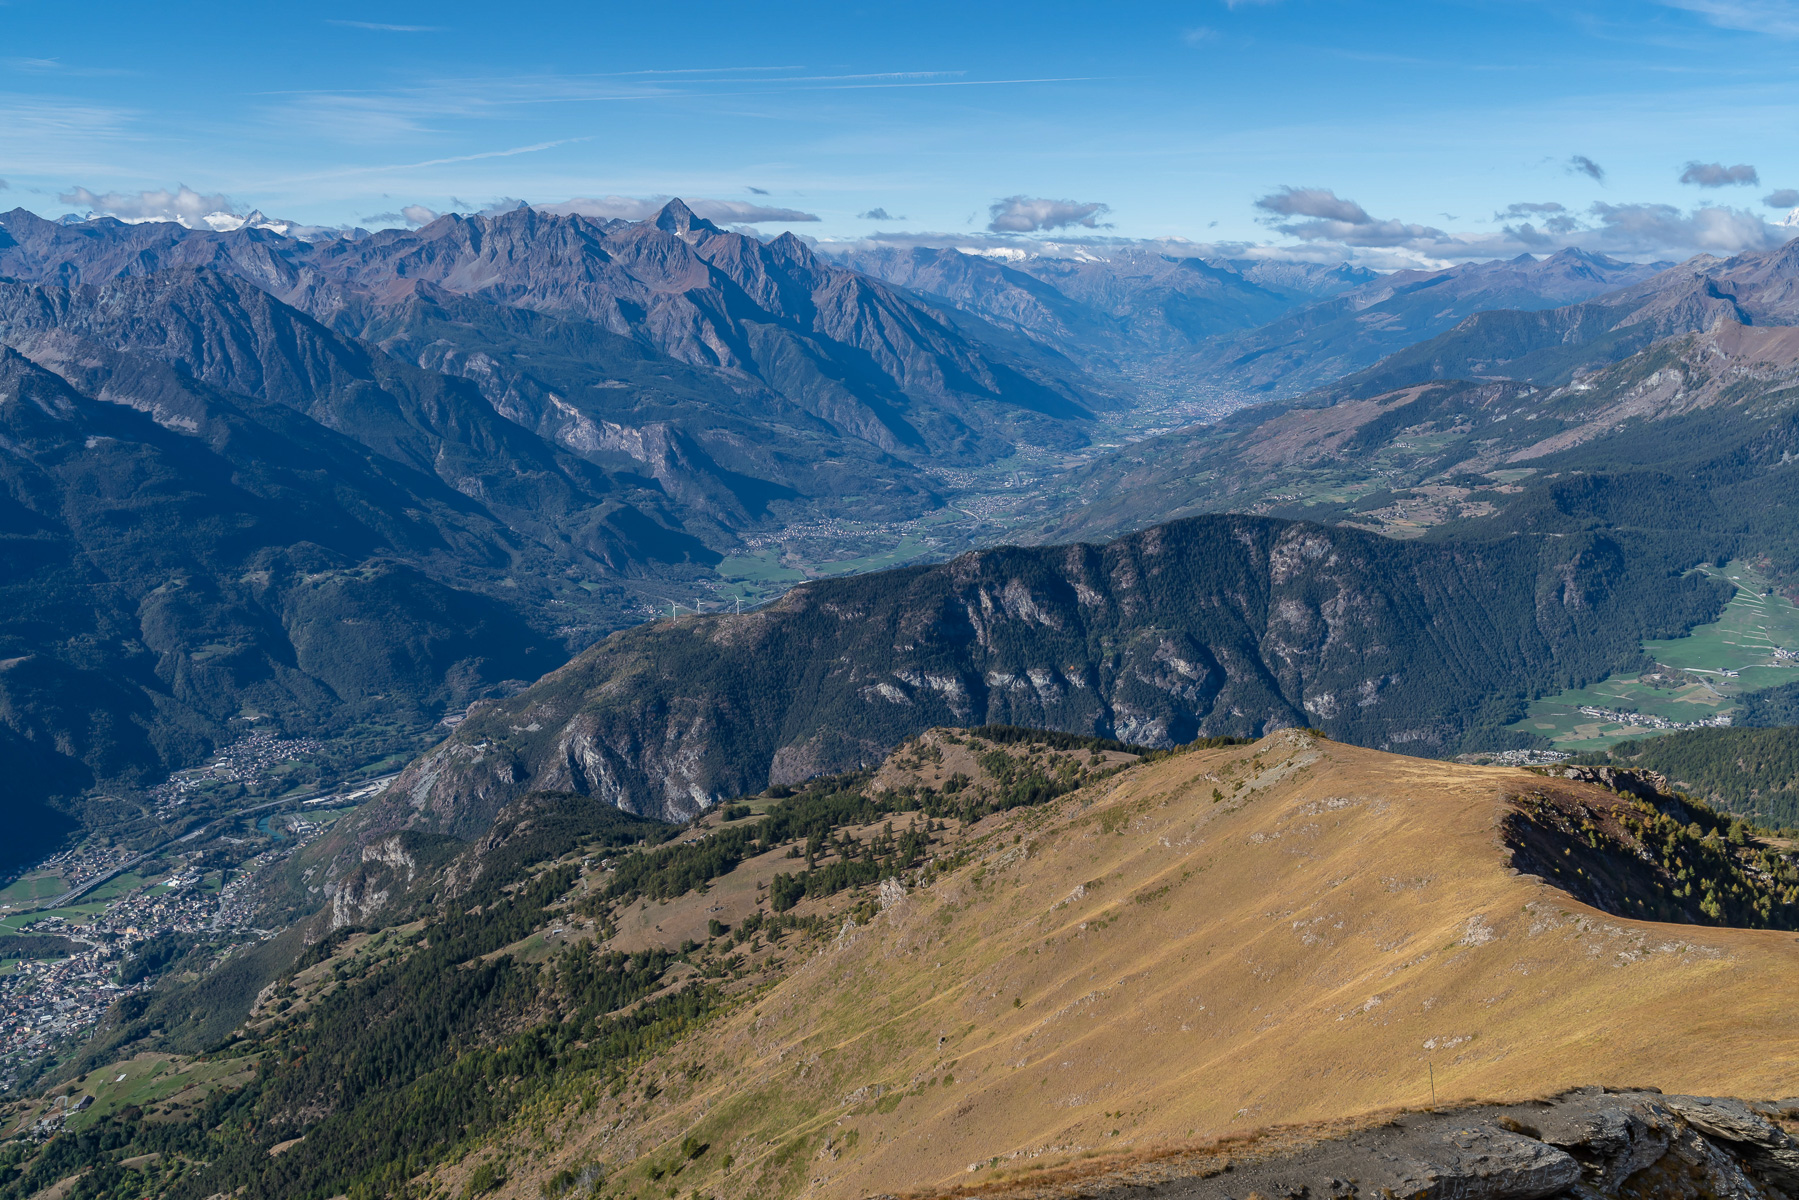 Tiefblick ins Aostatal mit dem beherrschenden Mont Emilius